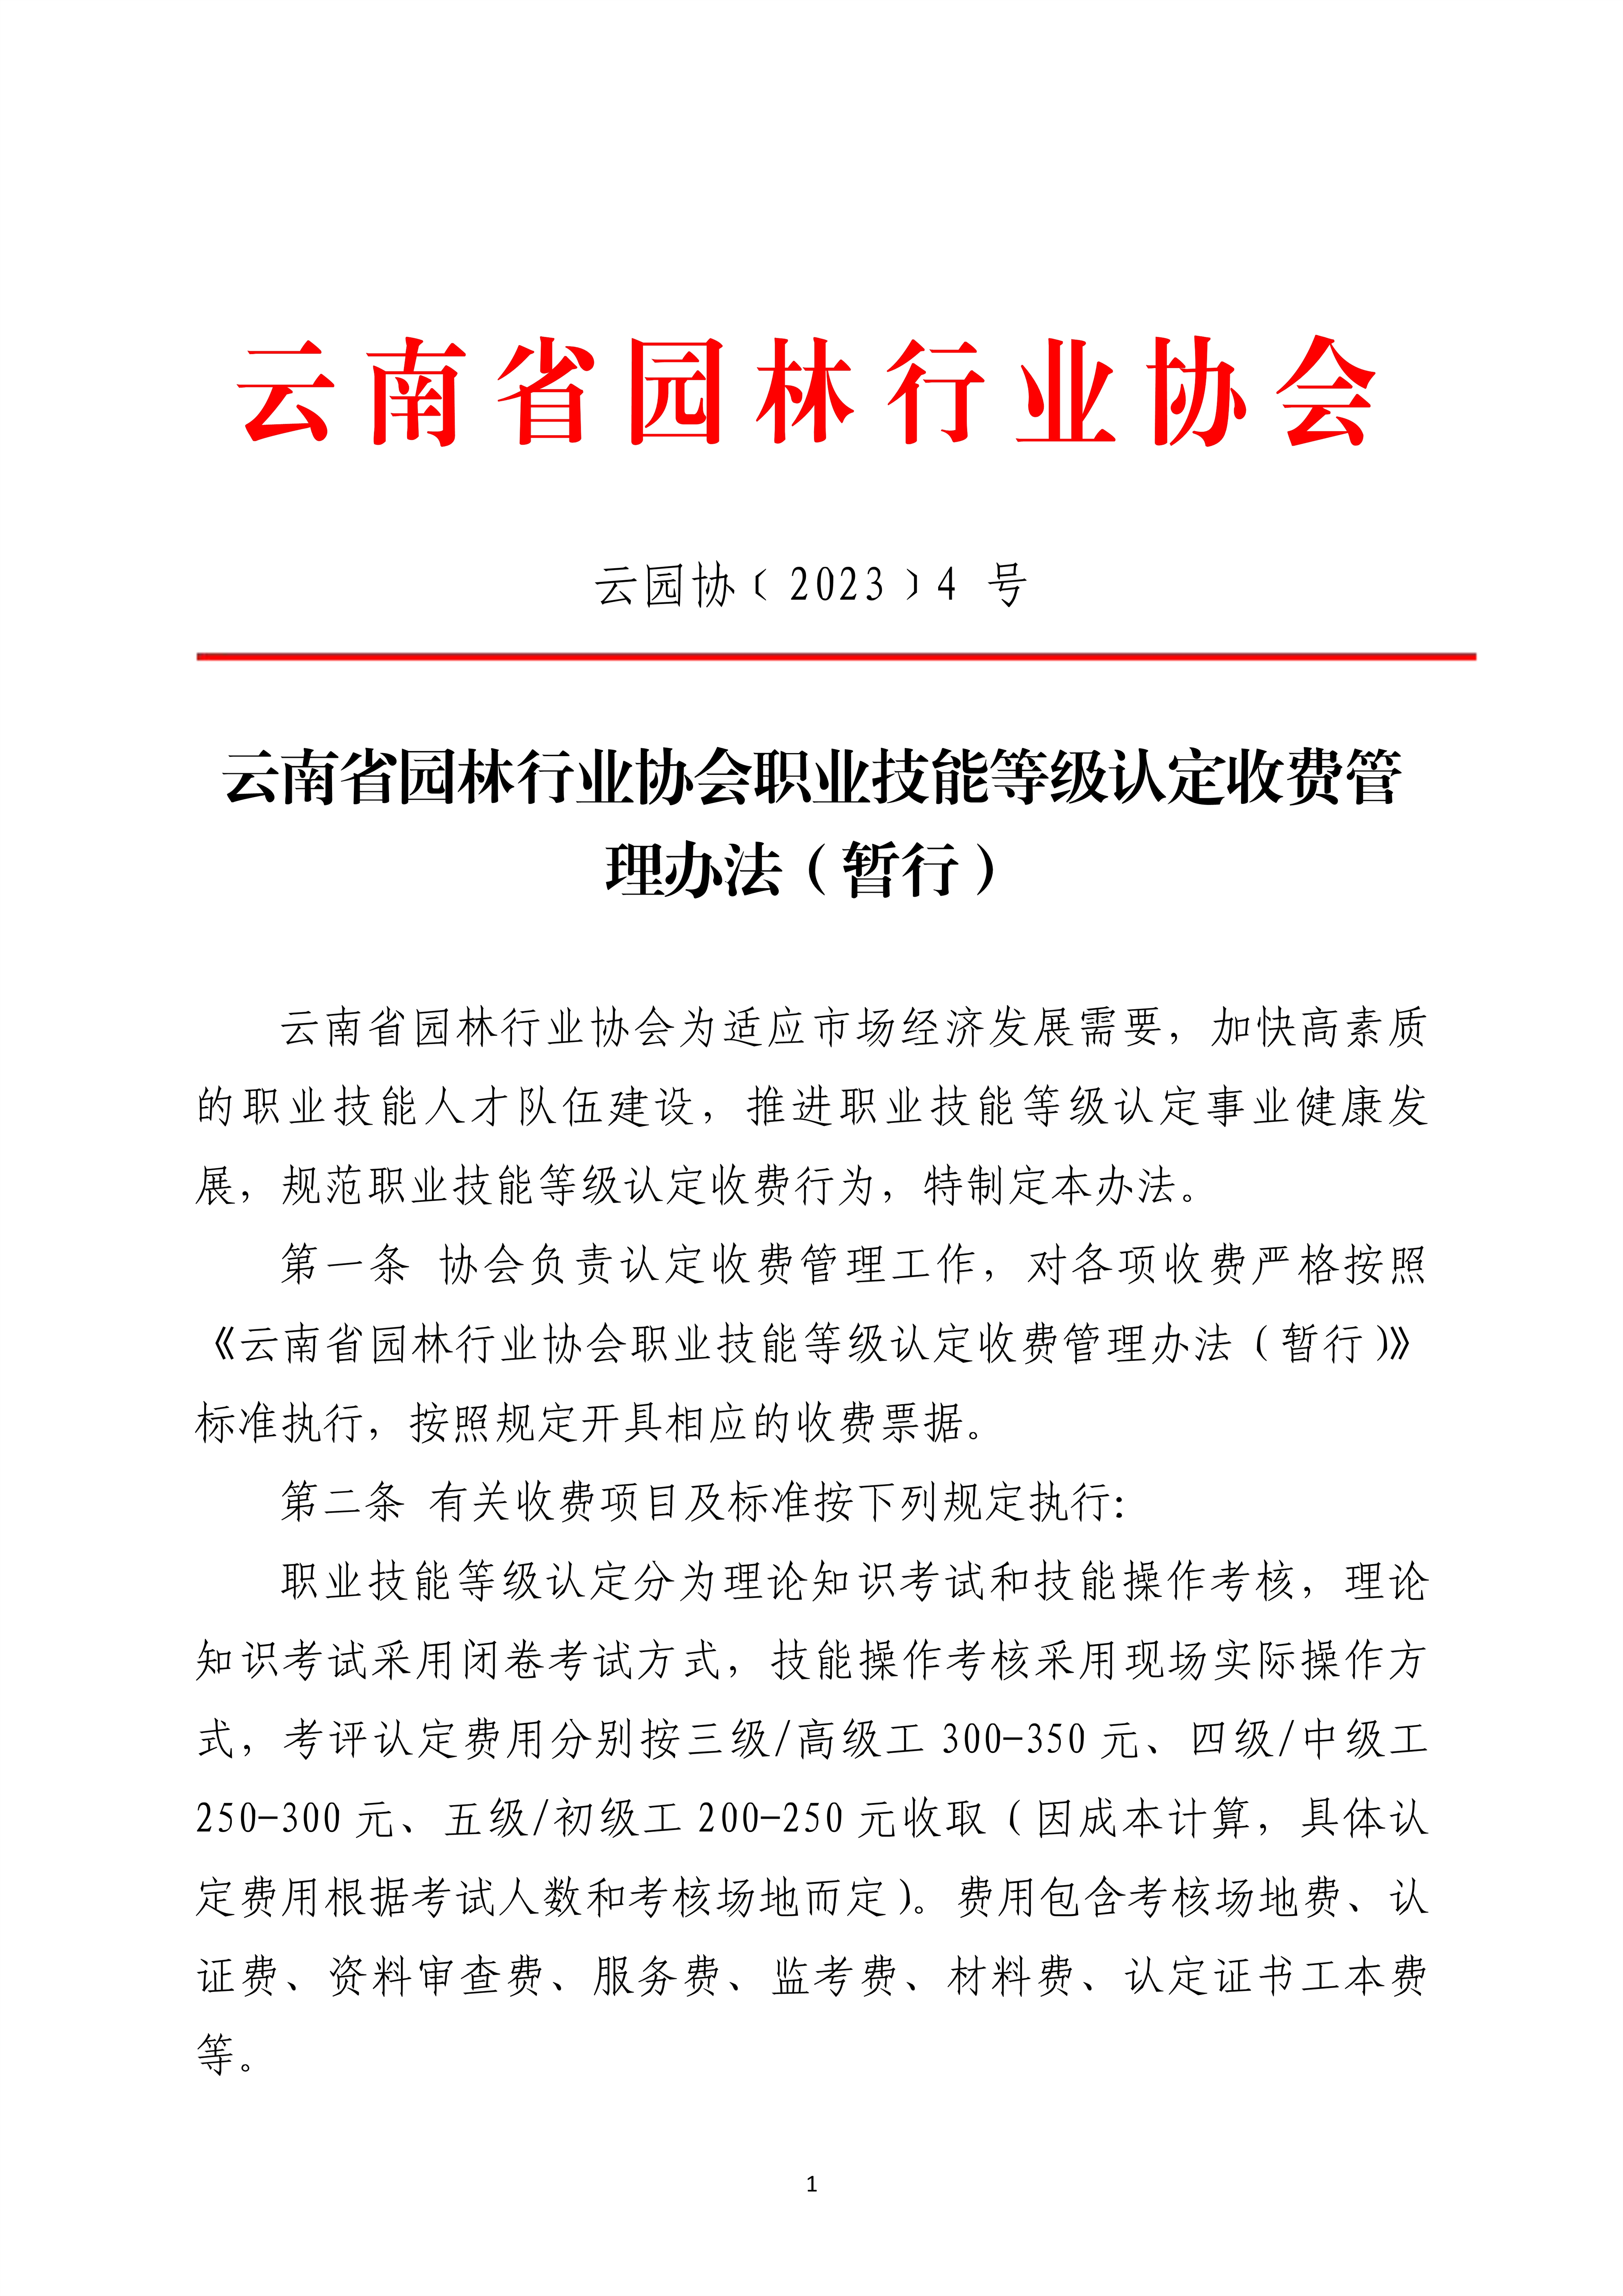 4云南省园林行业协会职业技能等级认定收费管理办法（暂行）_1.png